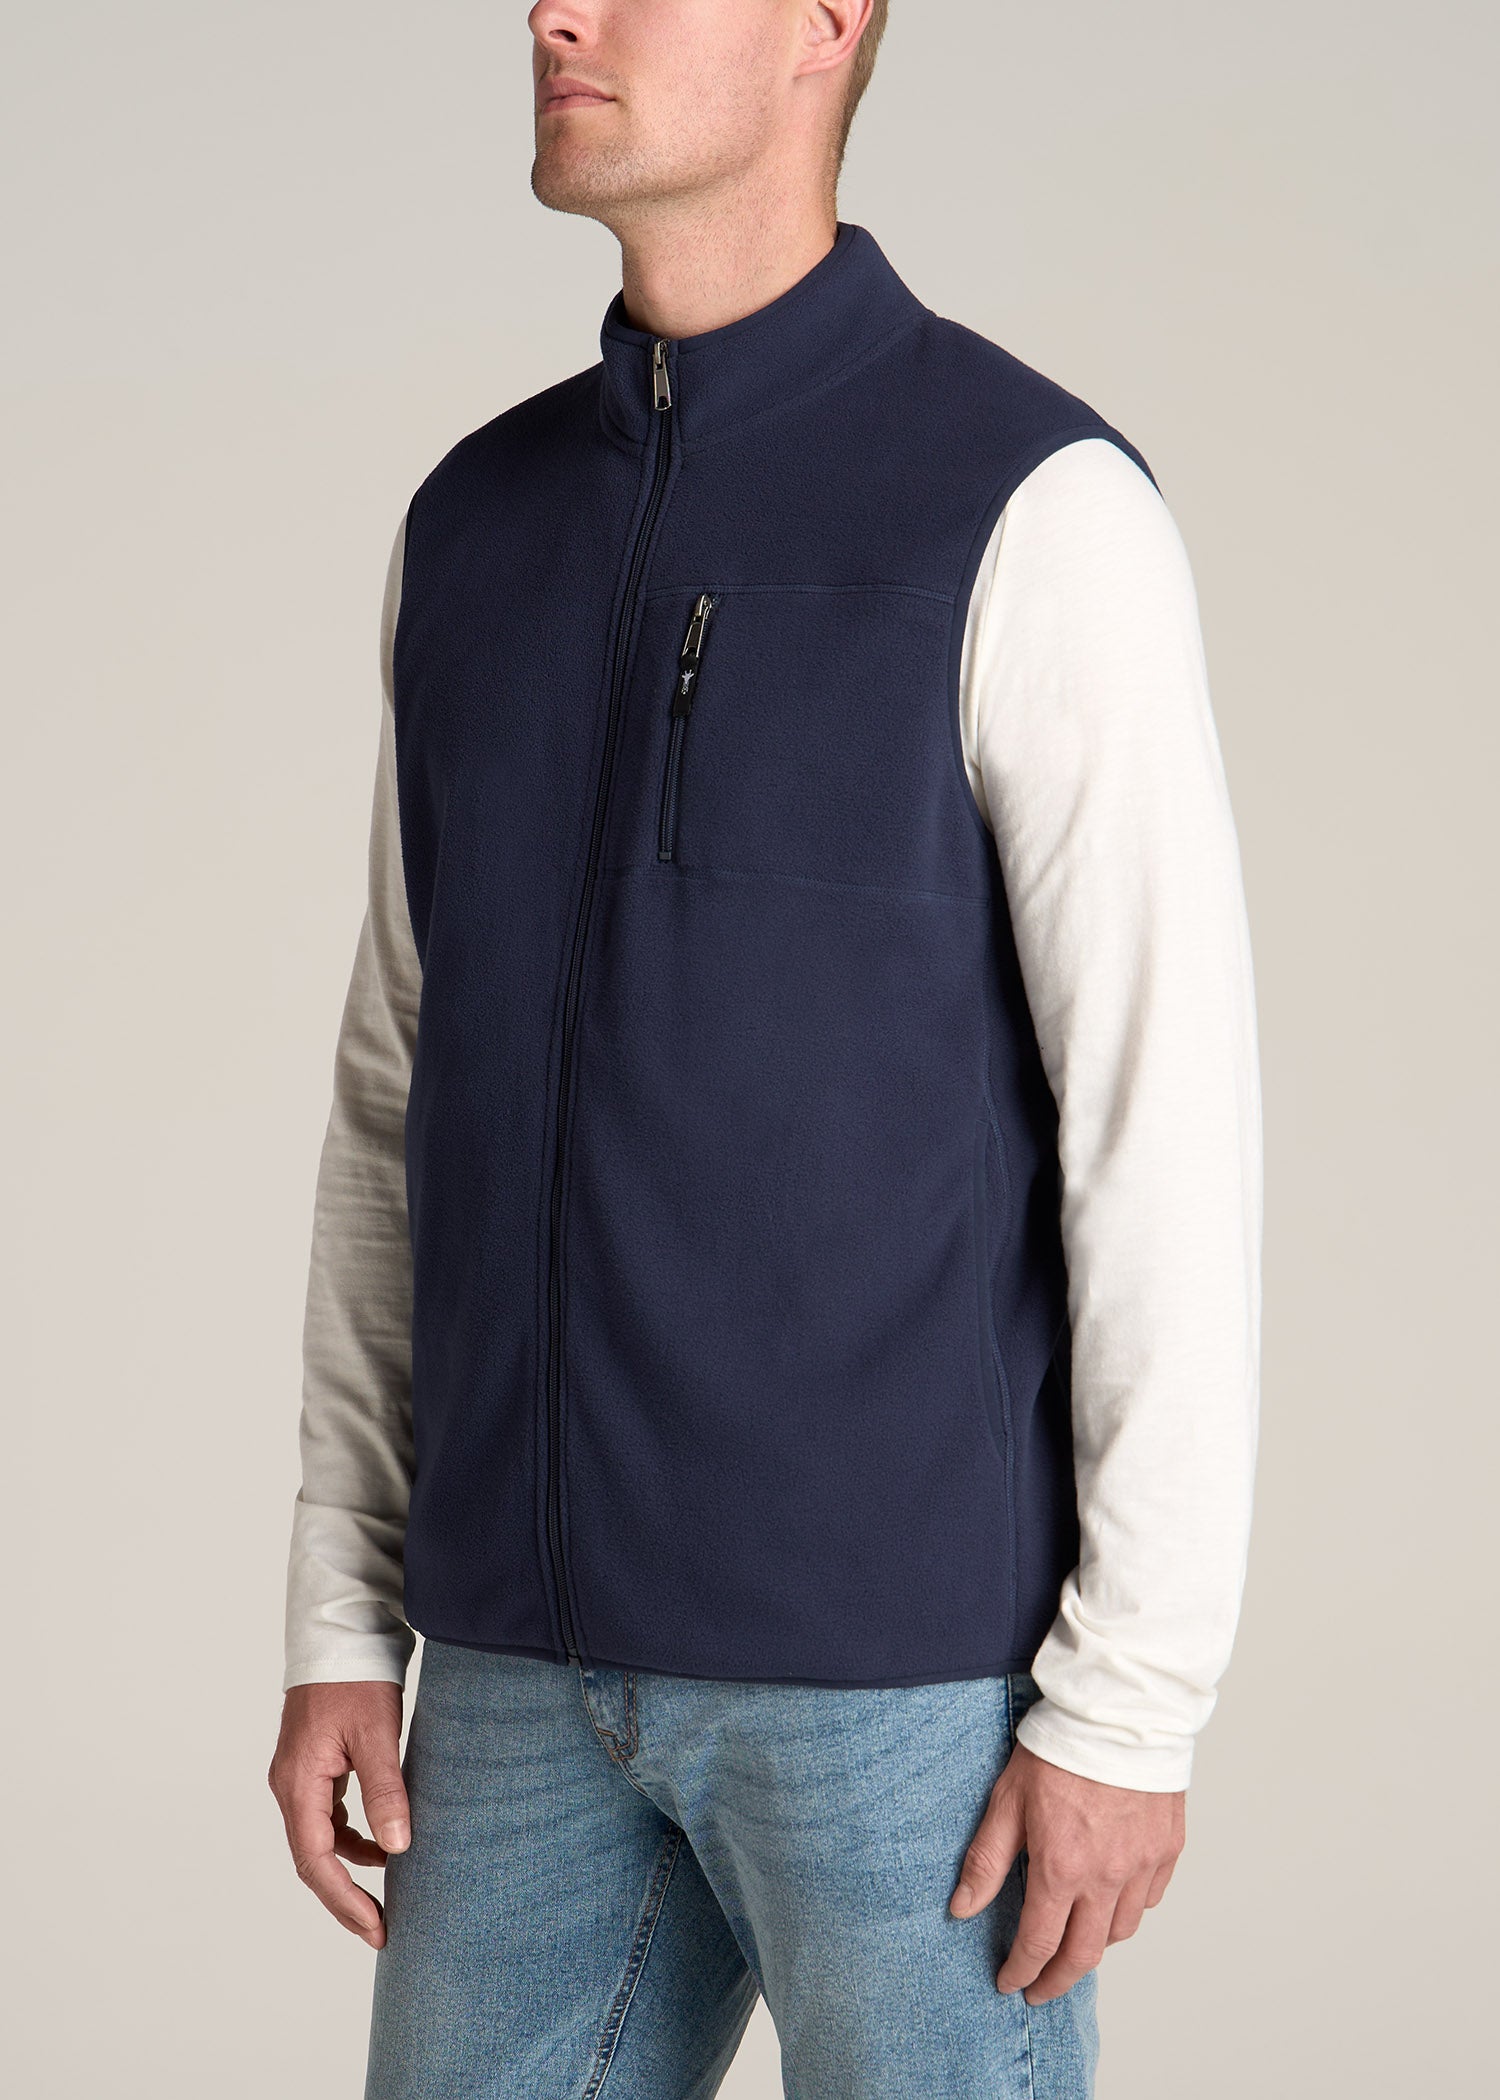 Polar Fleece Sweater Full Zip Vest for Tall Men